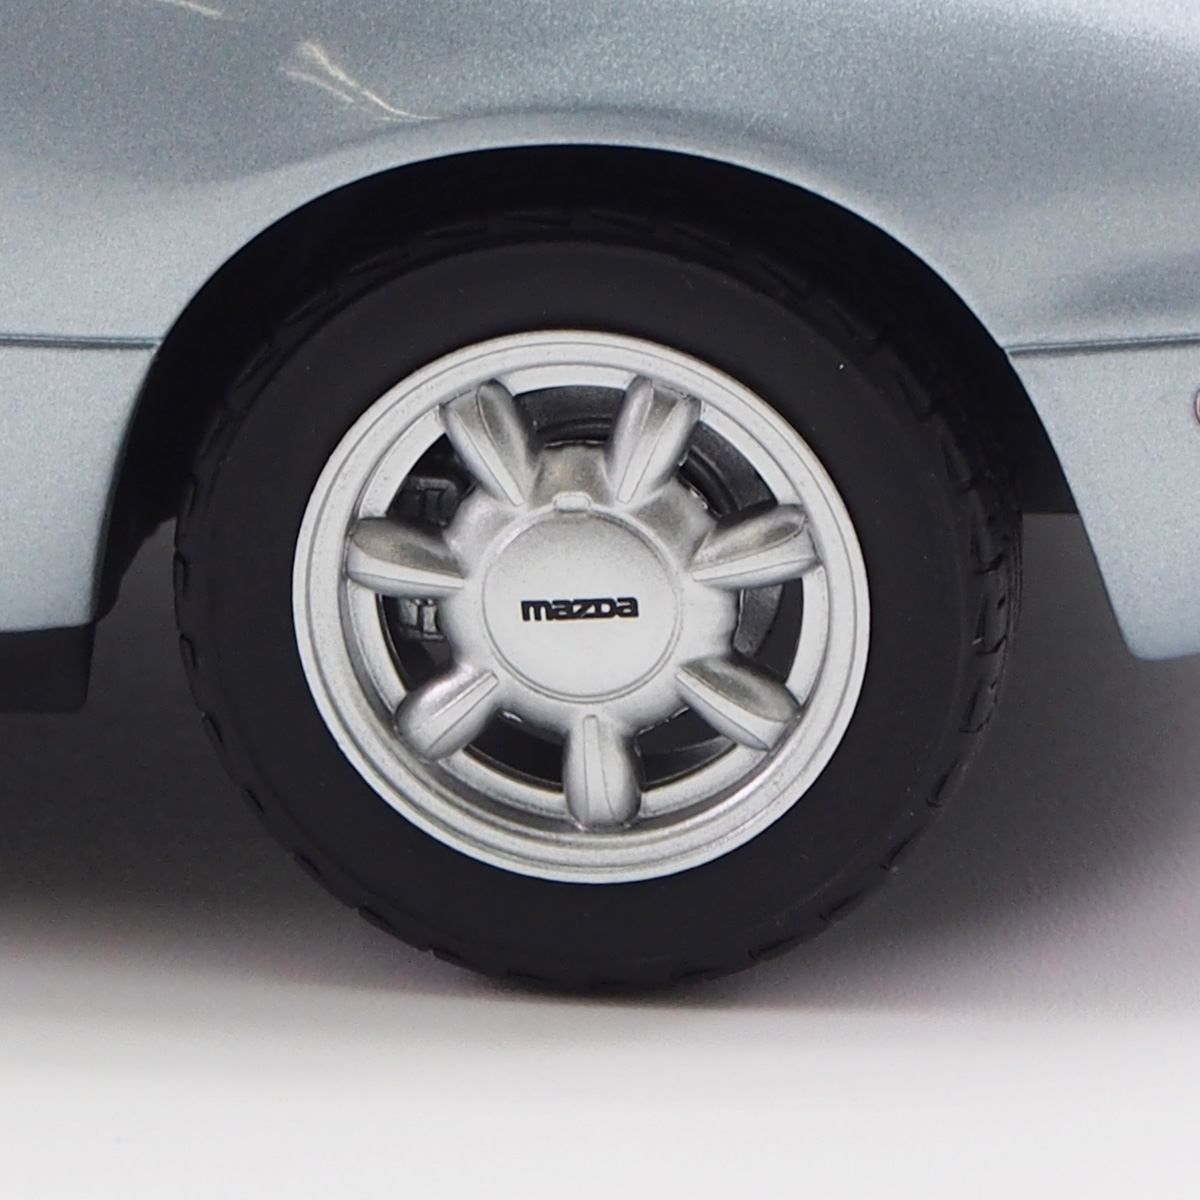 ノレブ 1/18 マツダ Mazda MX-5 1989年 モデルカー / シルバー画像